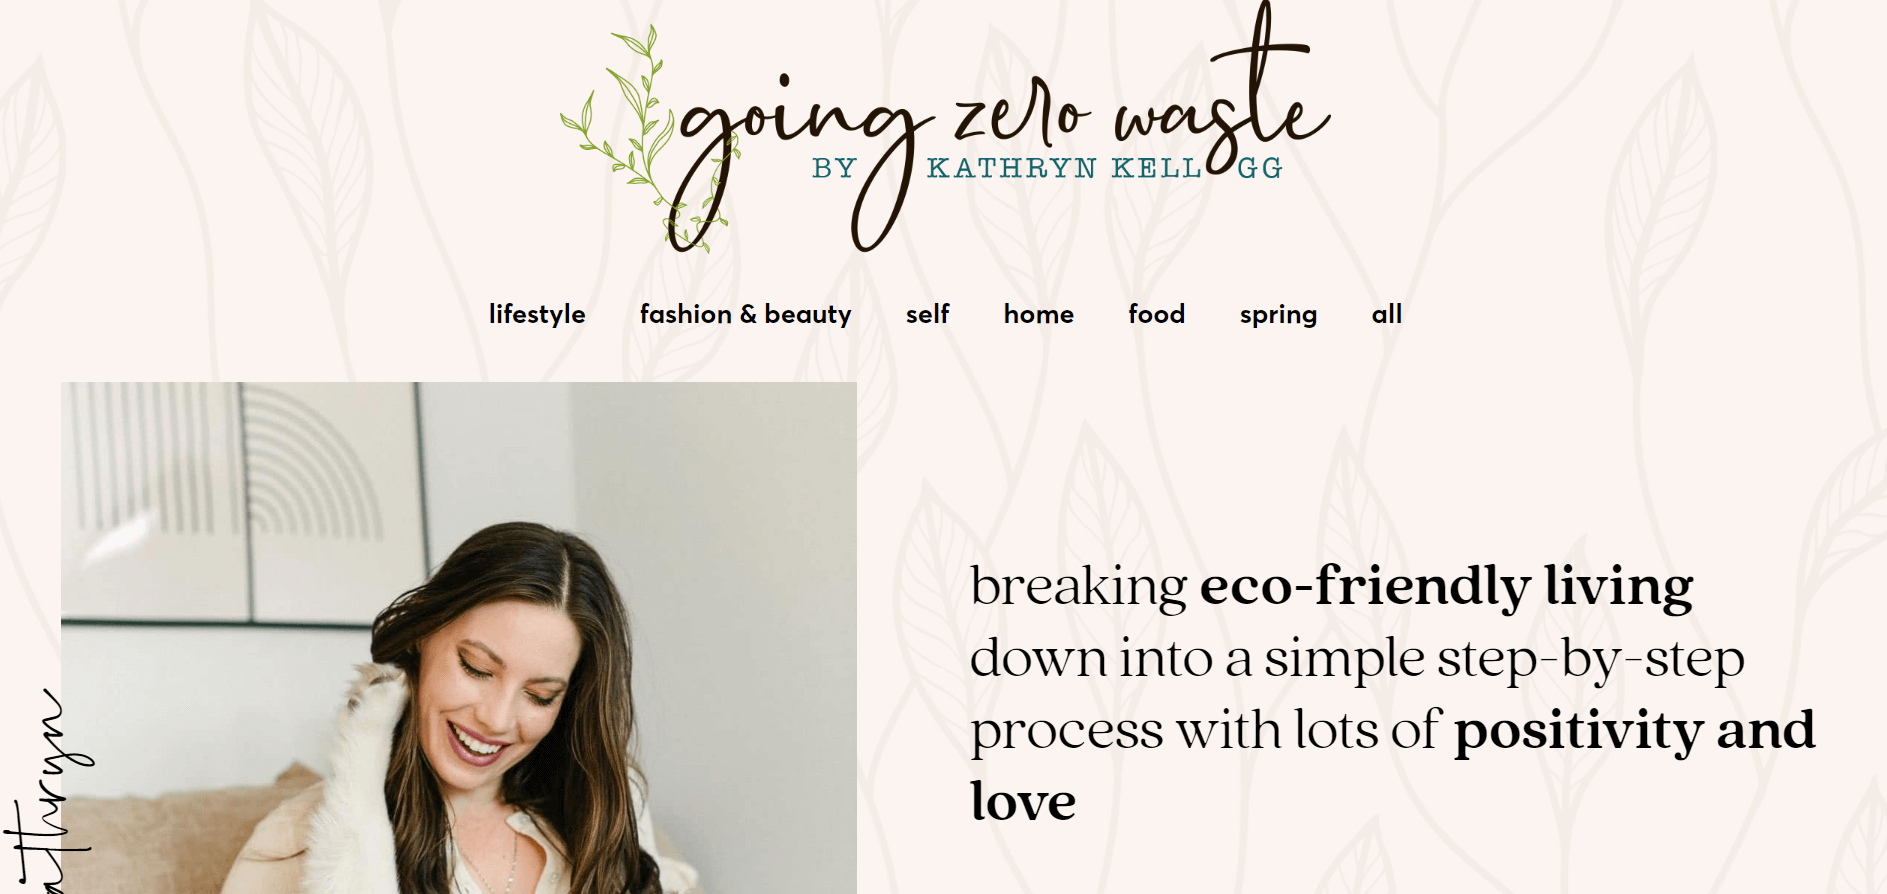 Going Zero Waste, a sustainability niche blog. 